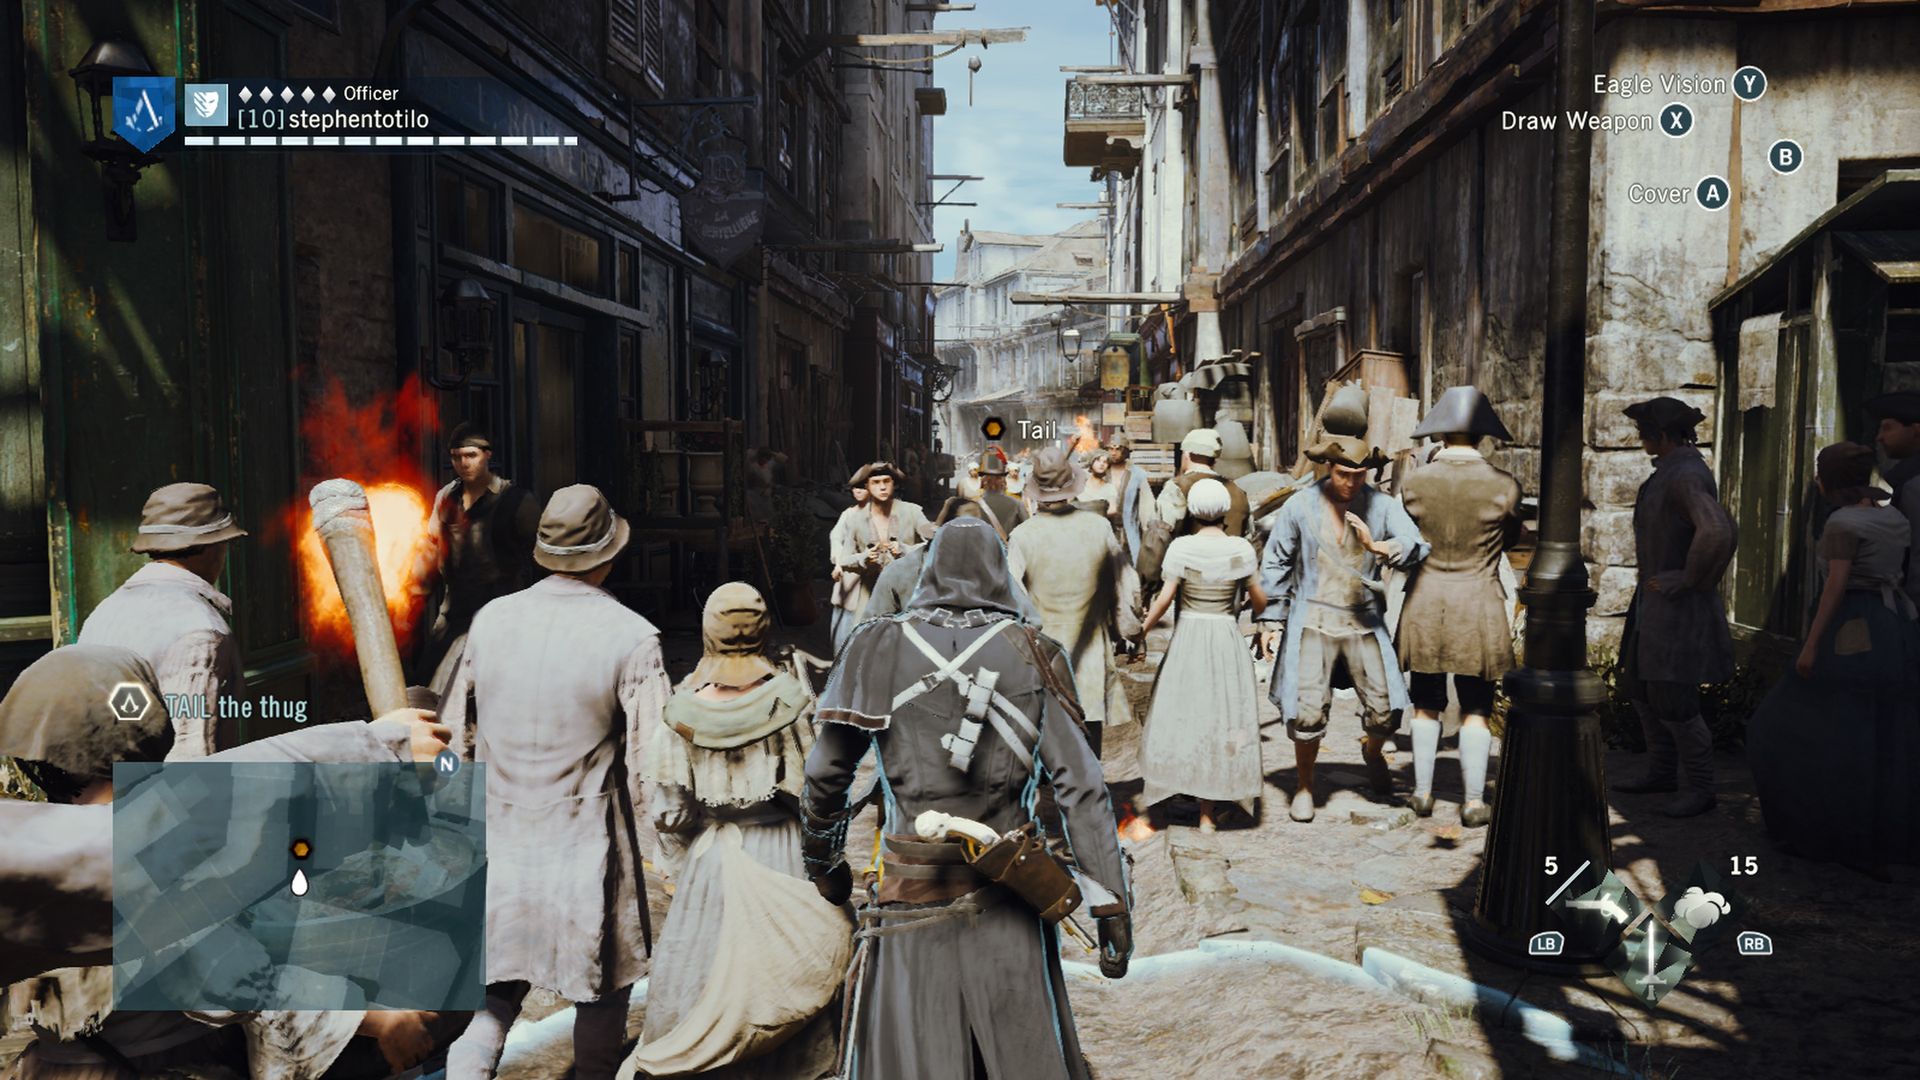 Video game screenshot of people walking through a street in 18th century Paris